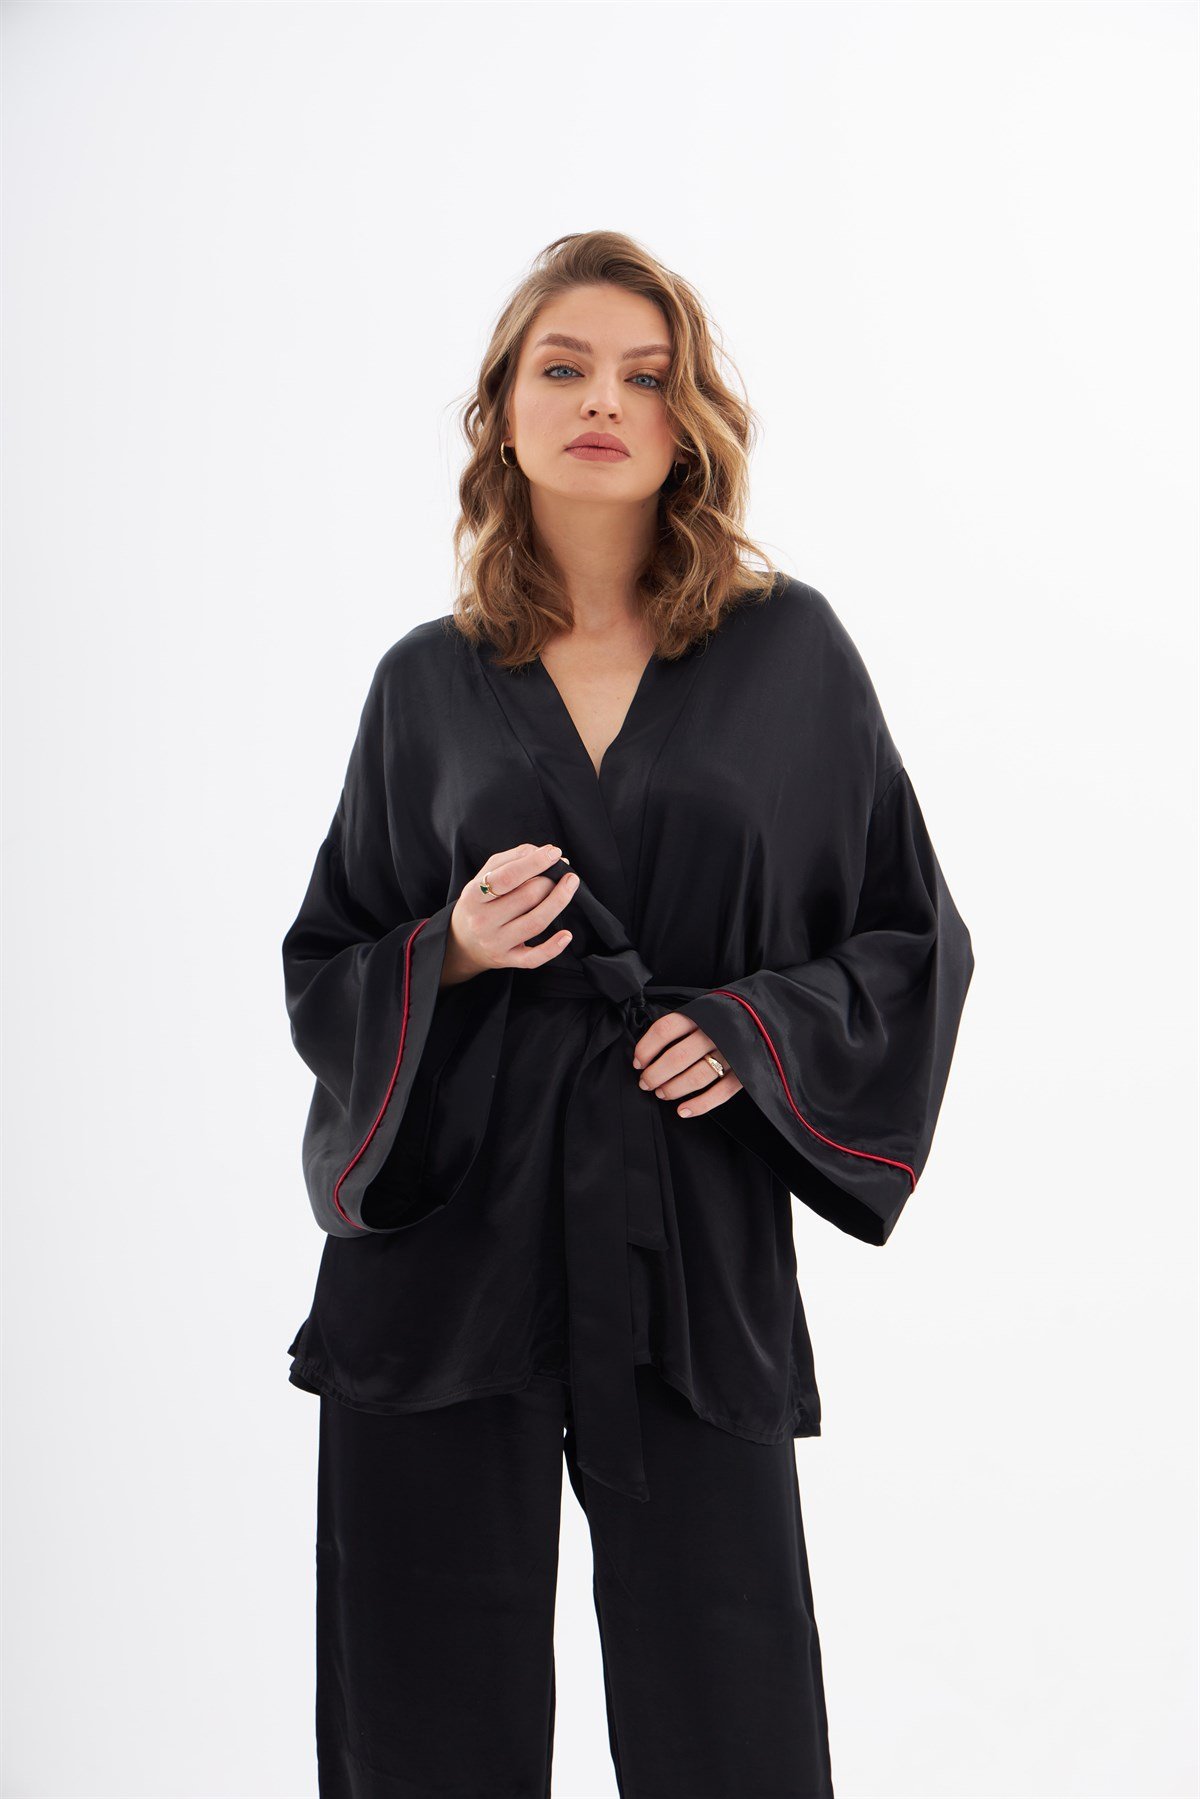 Violet Siyah İpek Saten Pijama Takımı | Grace&Lilly Violet Siyah İpek Saten  Pijama Takımı Ürünü ve Fiyatı